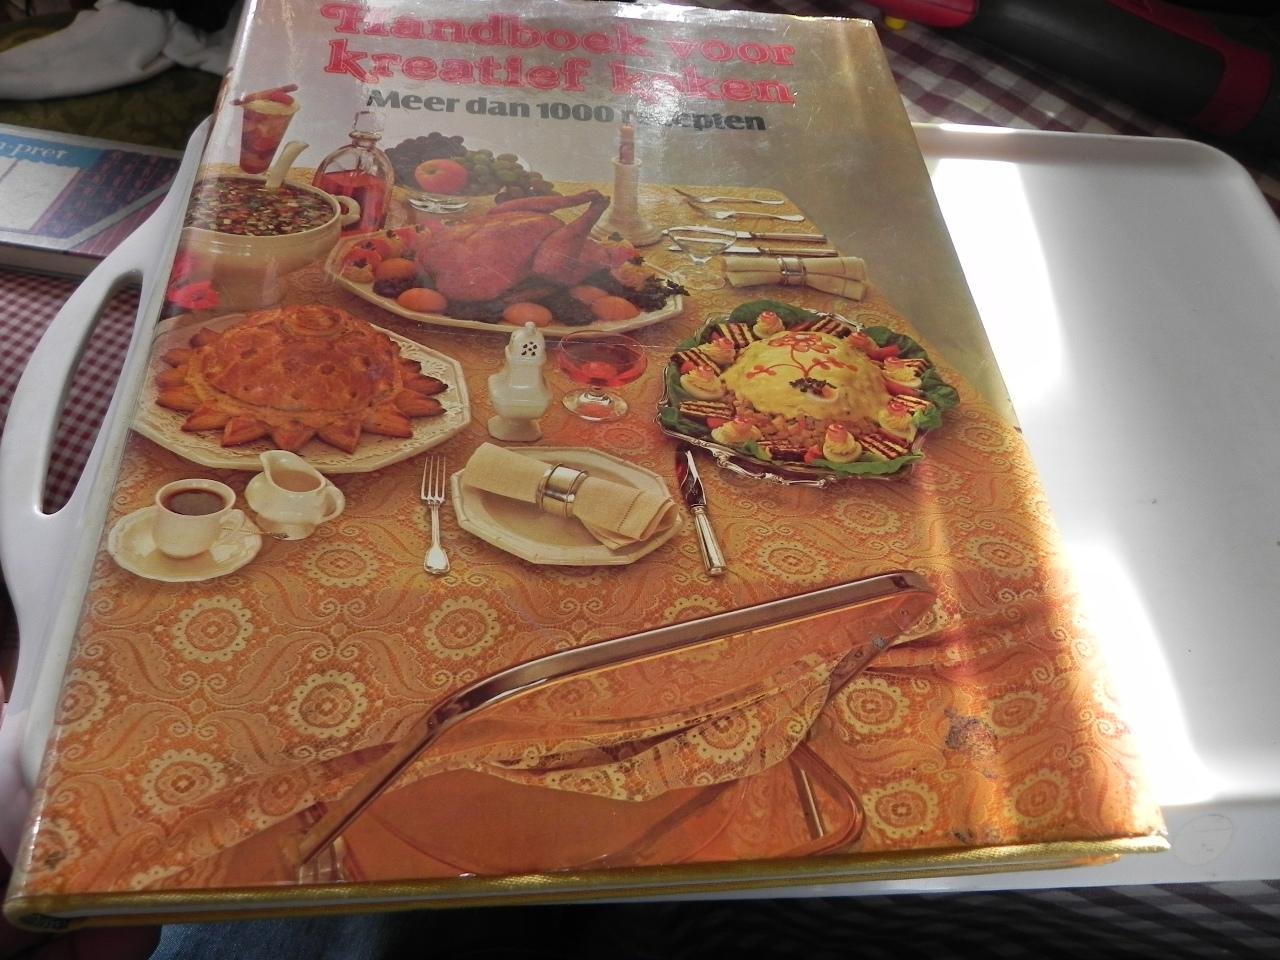 meerdere - Handboek voor kreatief koken / druk 1